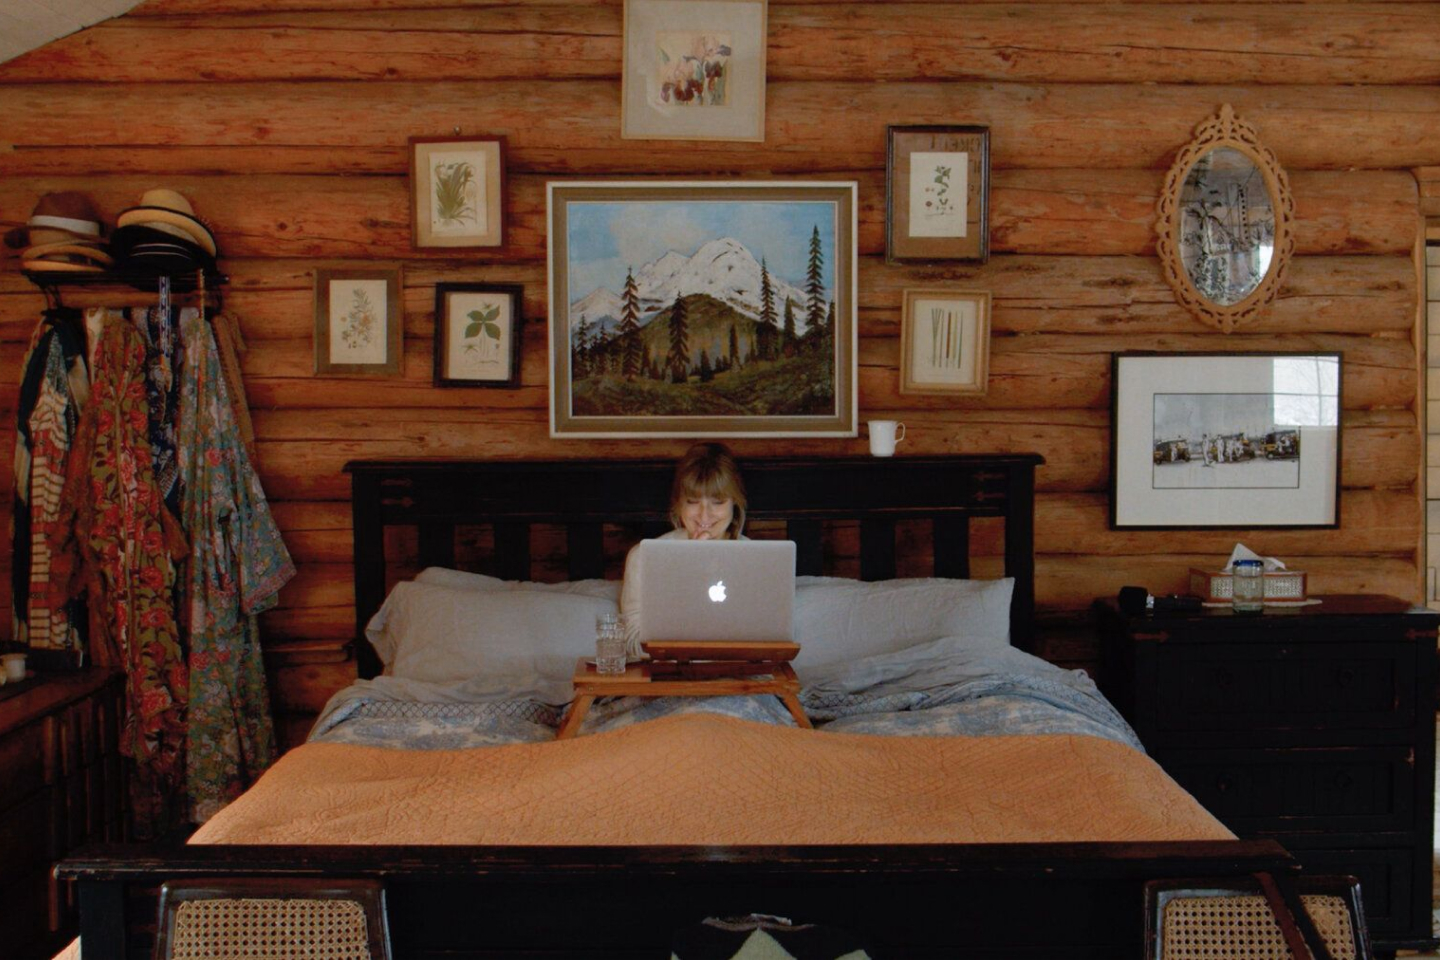 Una persona trabajando sin conexión en un MacBook mientras está en la cama.